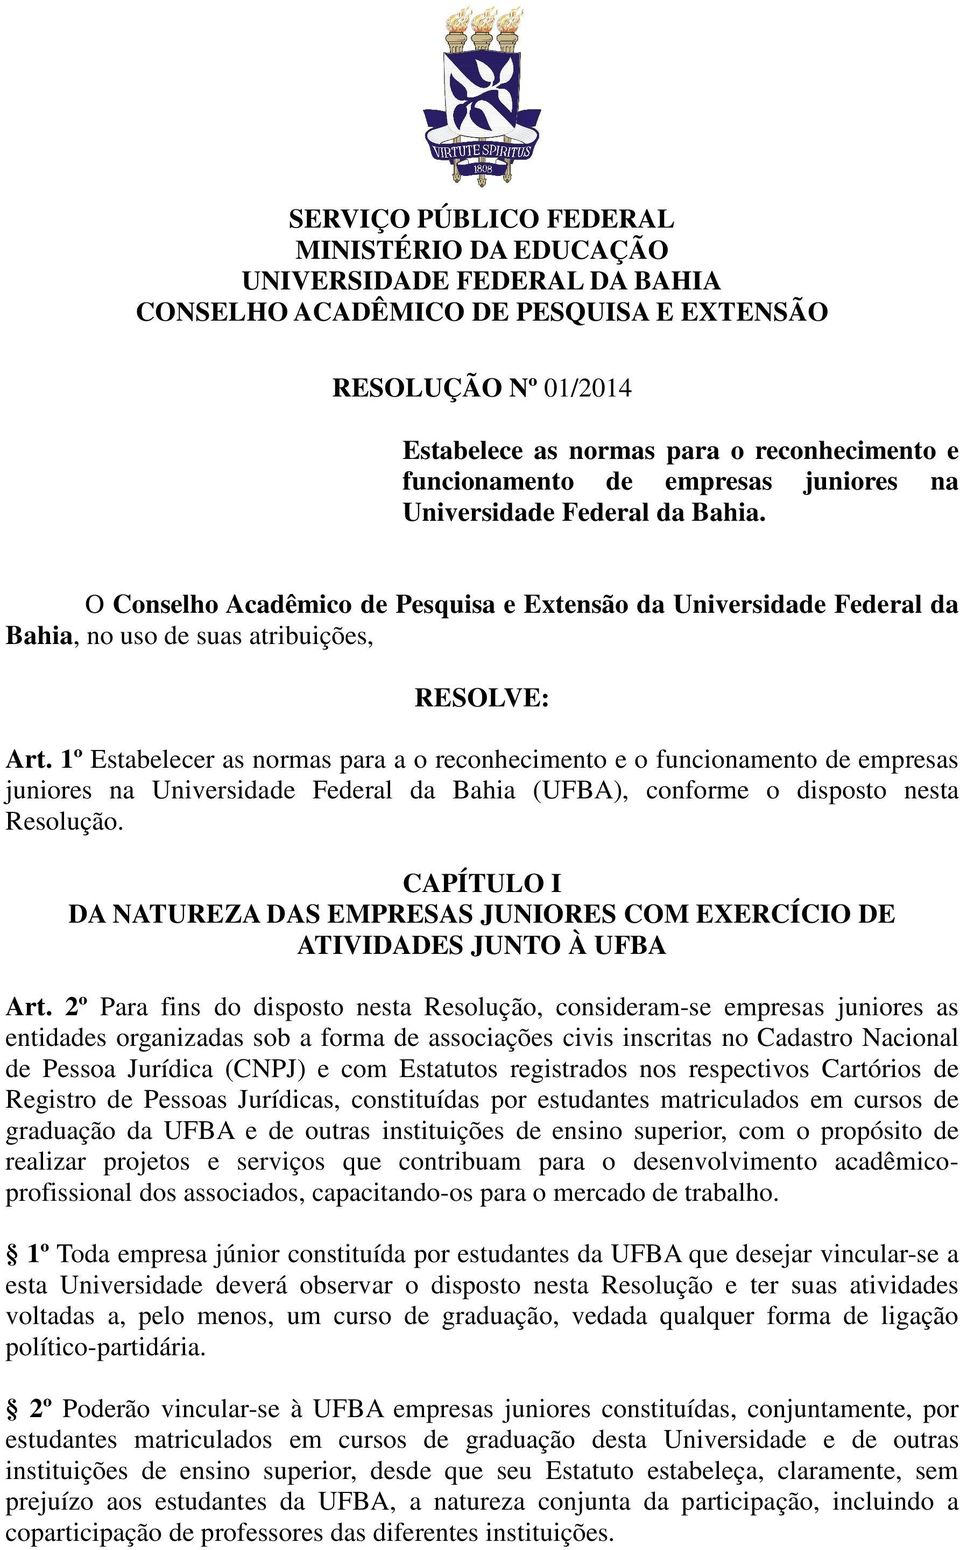 1º Estabelecer as normas para a o reconhecimento e o funcionamento de empresas juniores na Universidade Federal da Bahia (UFBA), conforme o disposto nesta Resolução.